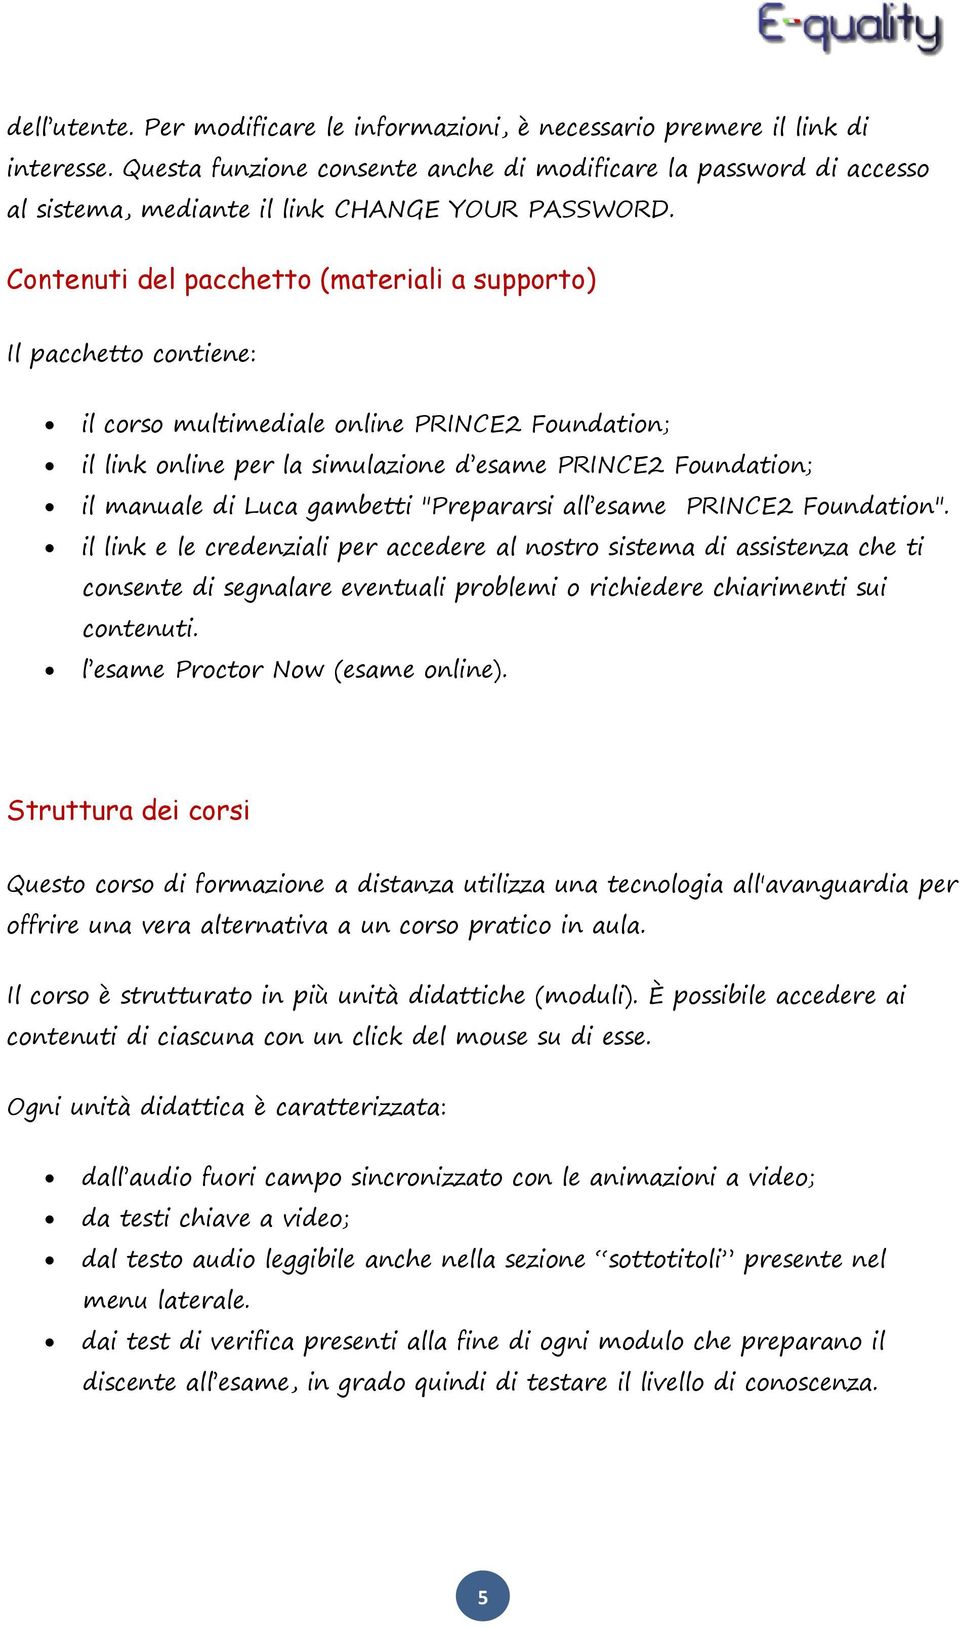 Contenuti del pacchetto (materiali a supporto) Il pacchetto contiene: il corso multimediale online PRINCE2 Foundation; il link online per la simulazione d esame PRINCE2 Foundation; il manuale di Luca